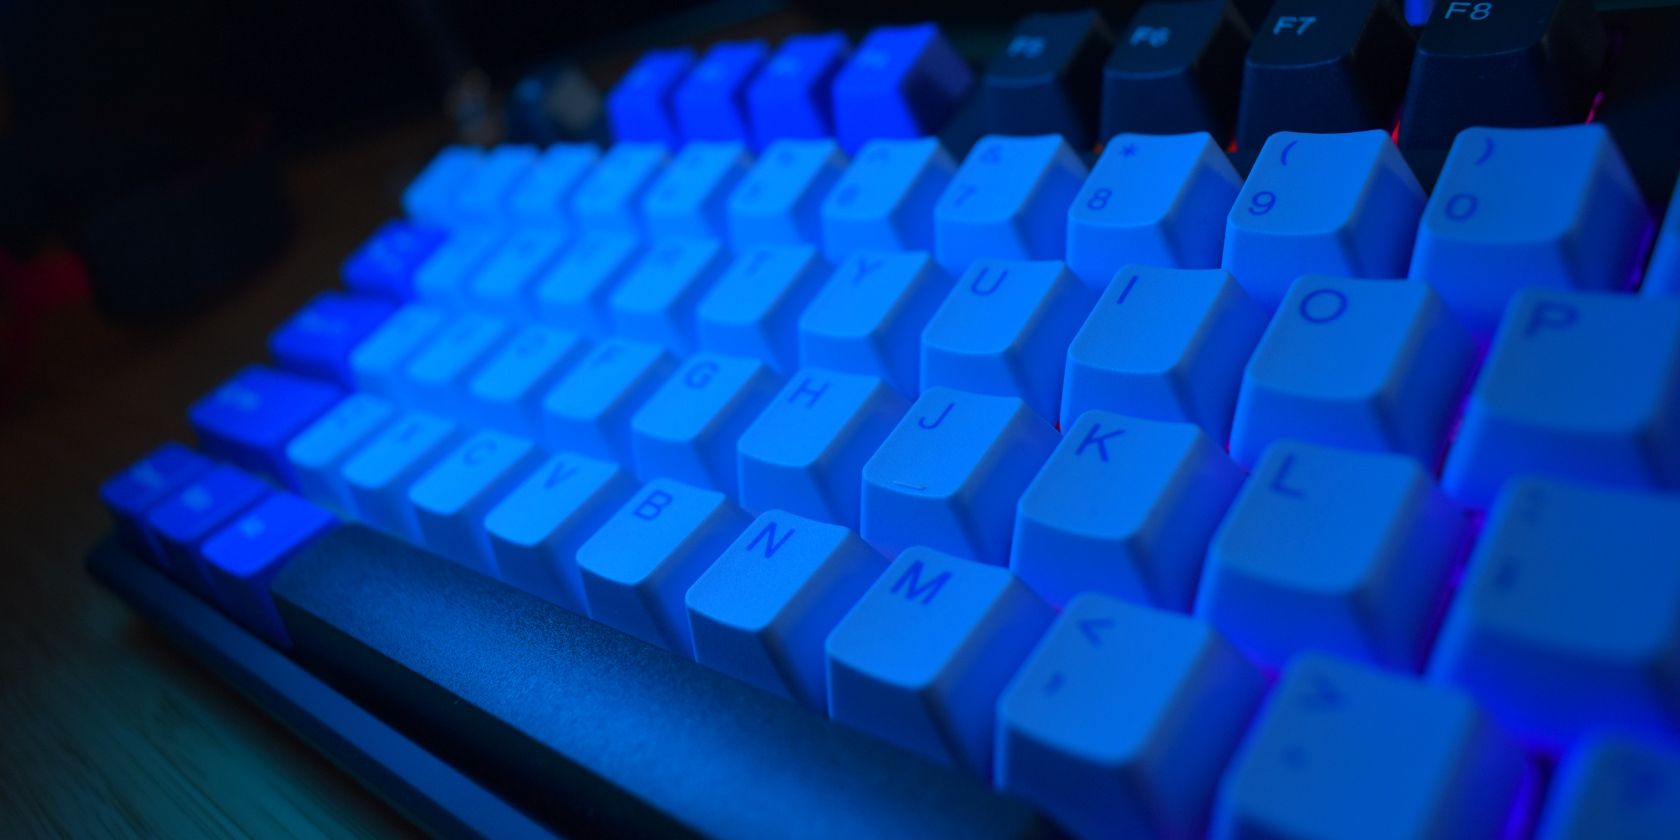 kono discord tkl mechanical keyboard blue light side